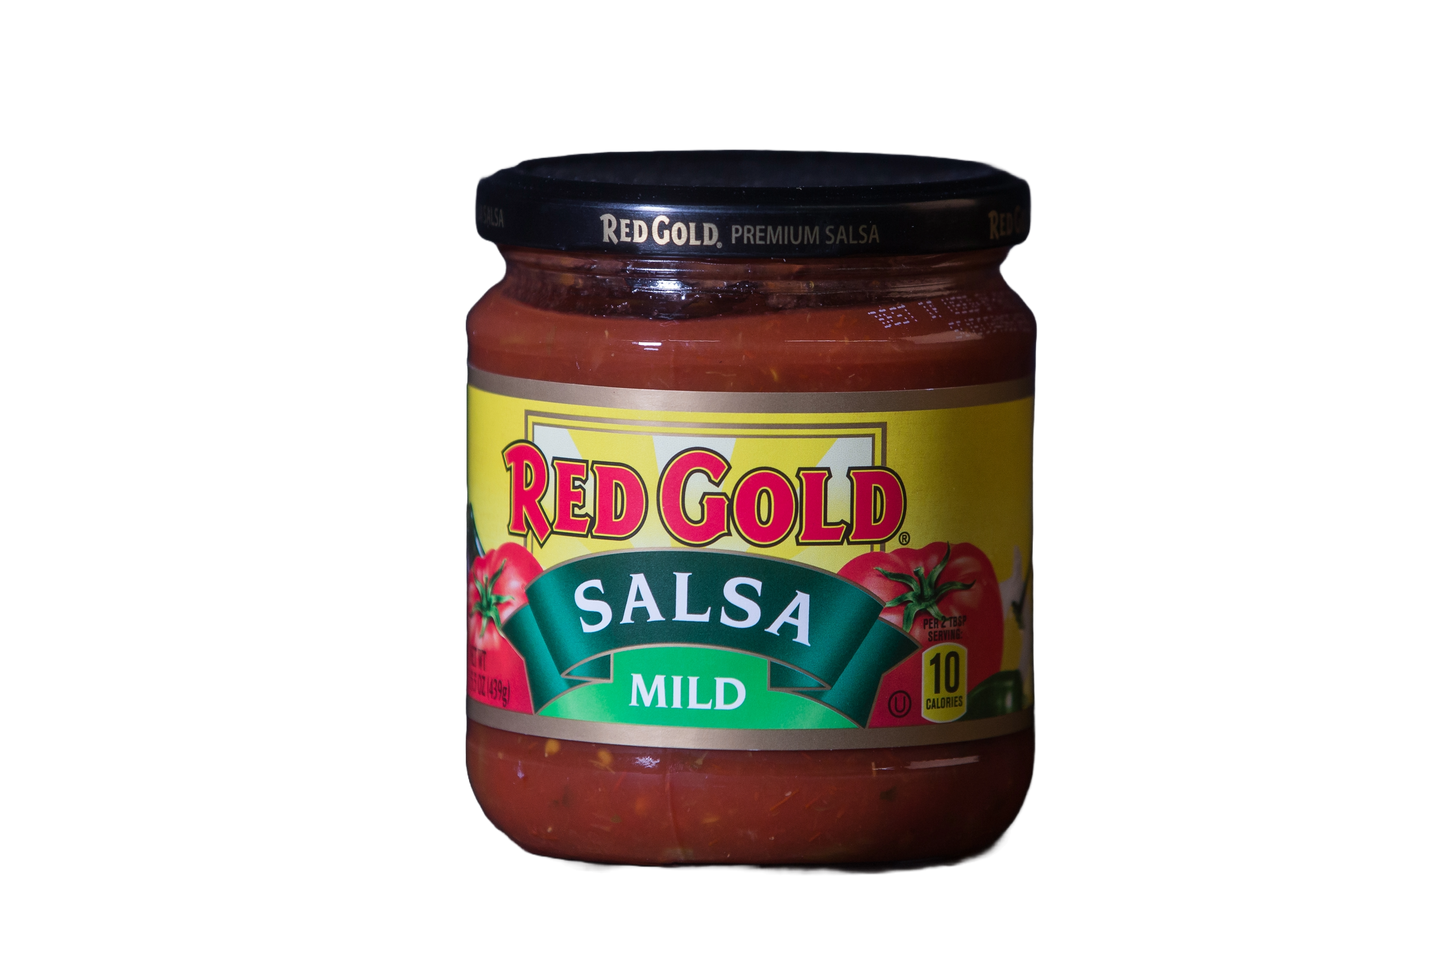 Red Gold Mild Salsa, 15.5 oz